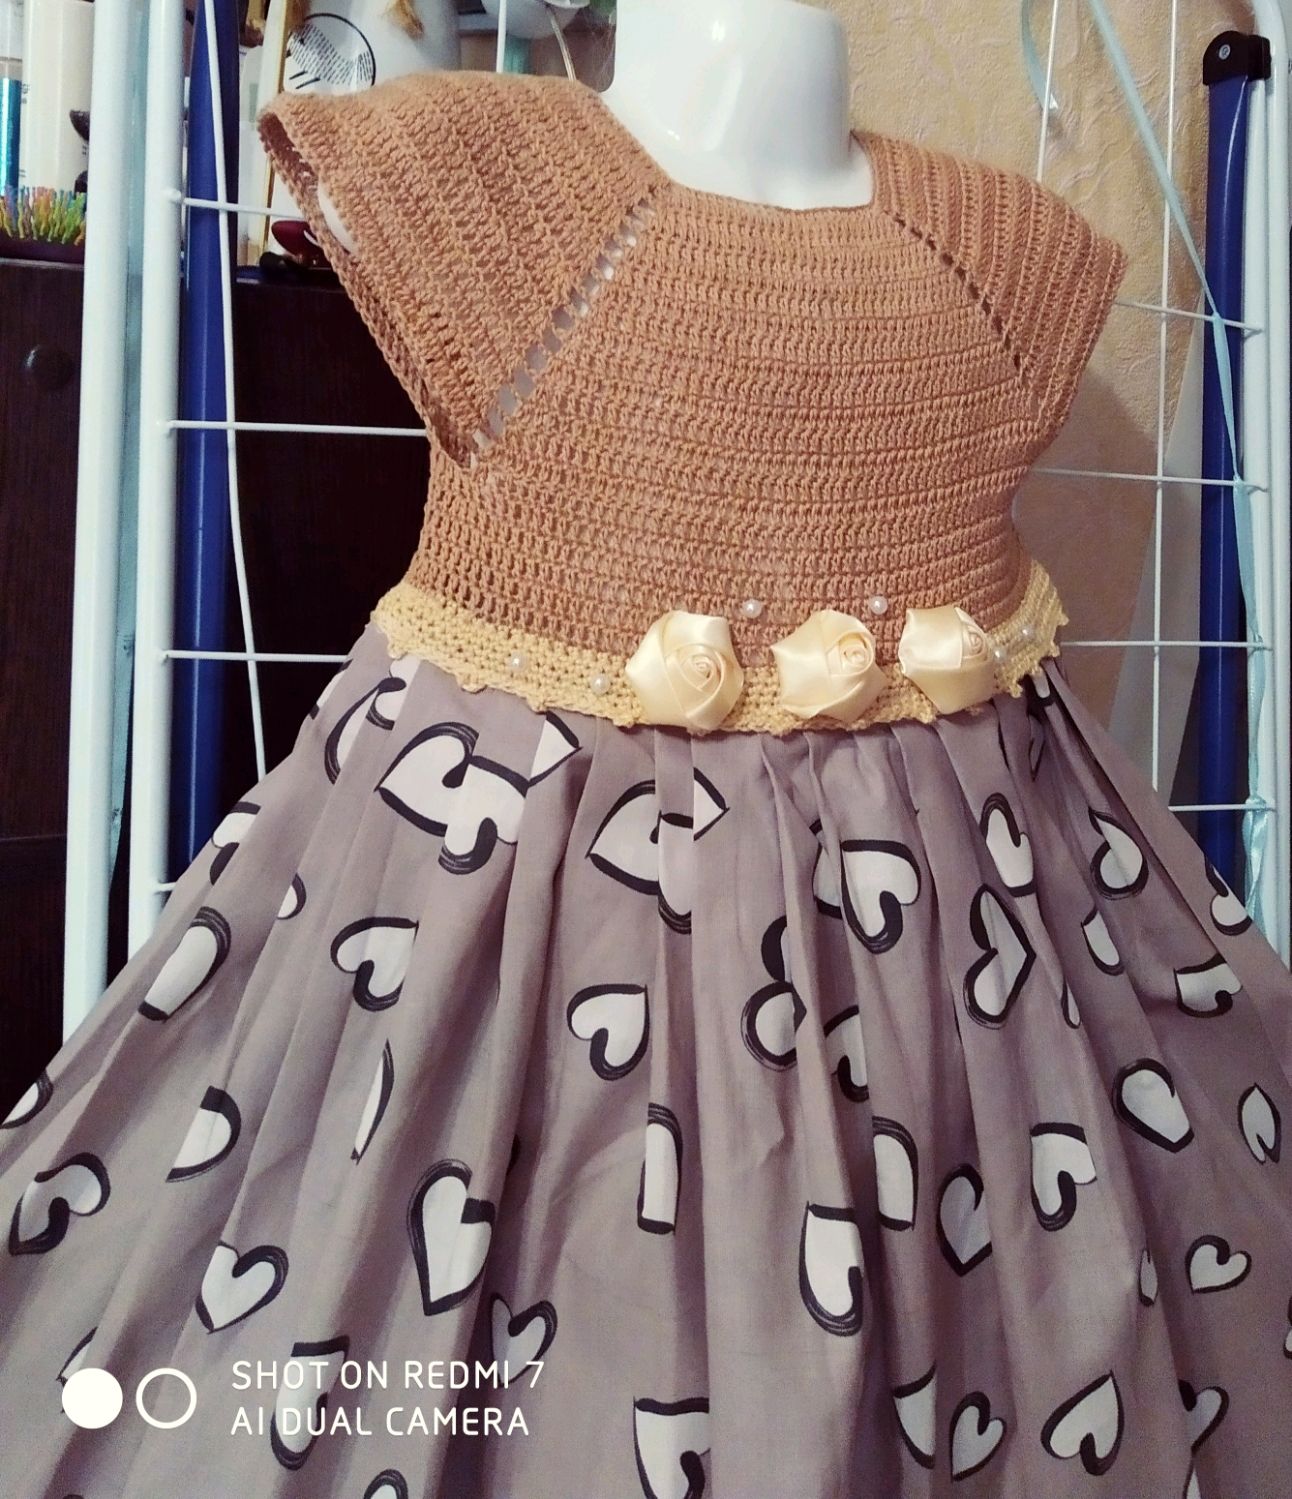 Онлайн вязание комбинированного платья для девочек. Начинаем!!!